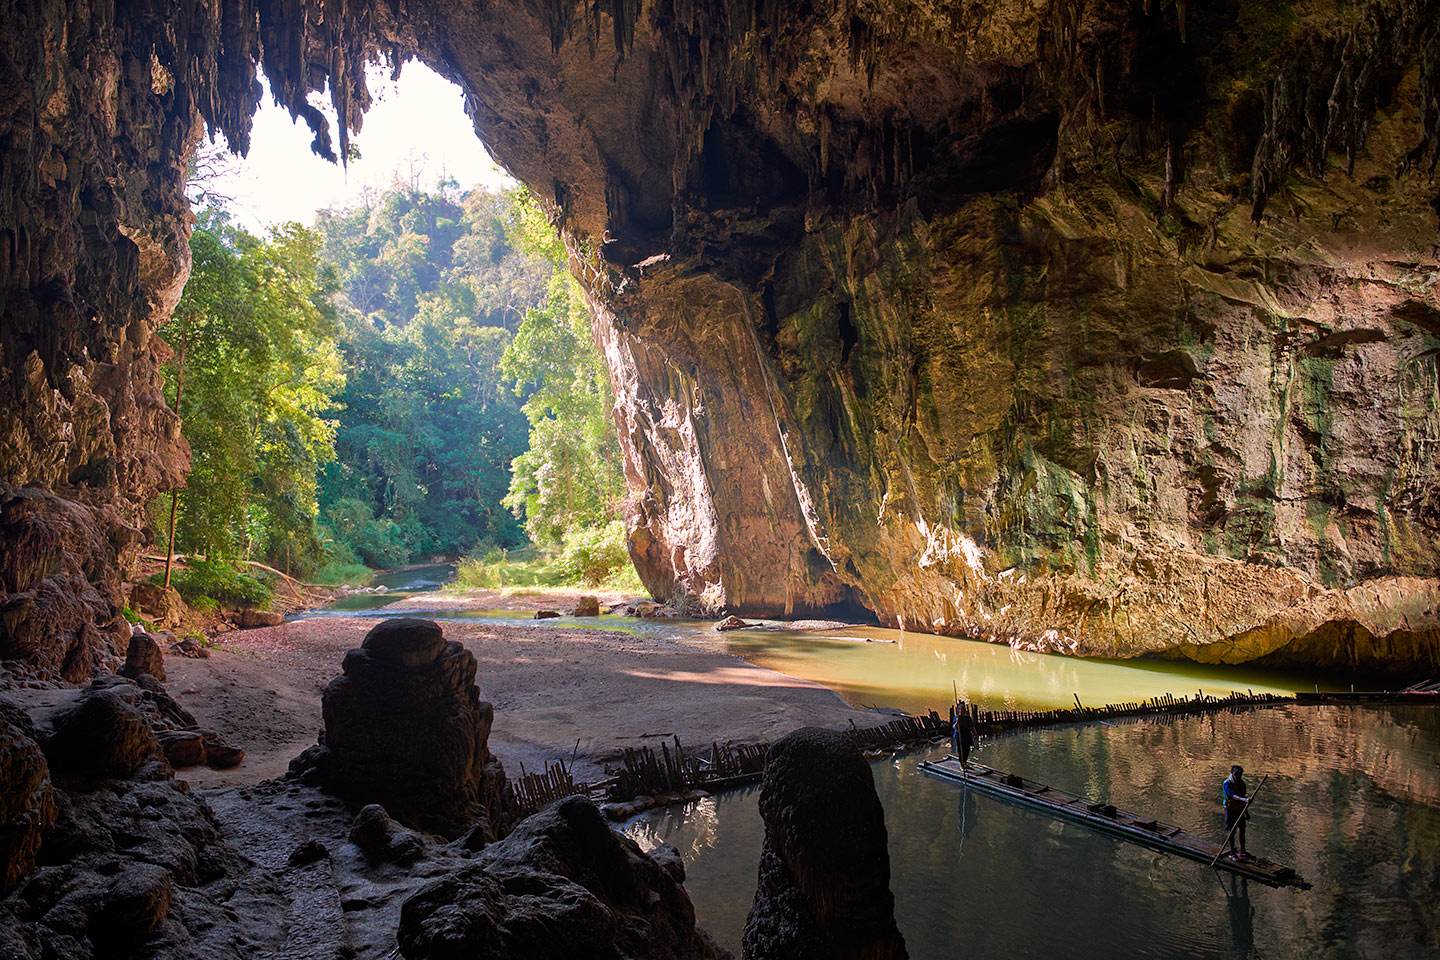 Thom Lod Cave, Thailand - February 2014 - Fujifilm X-E2 | Fujinon XF 14mm Lens | f/3.2 | ISO 200 | 1/80